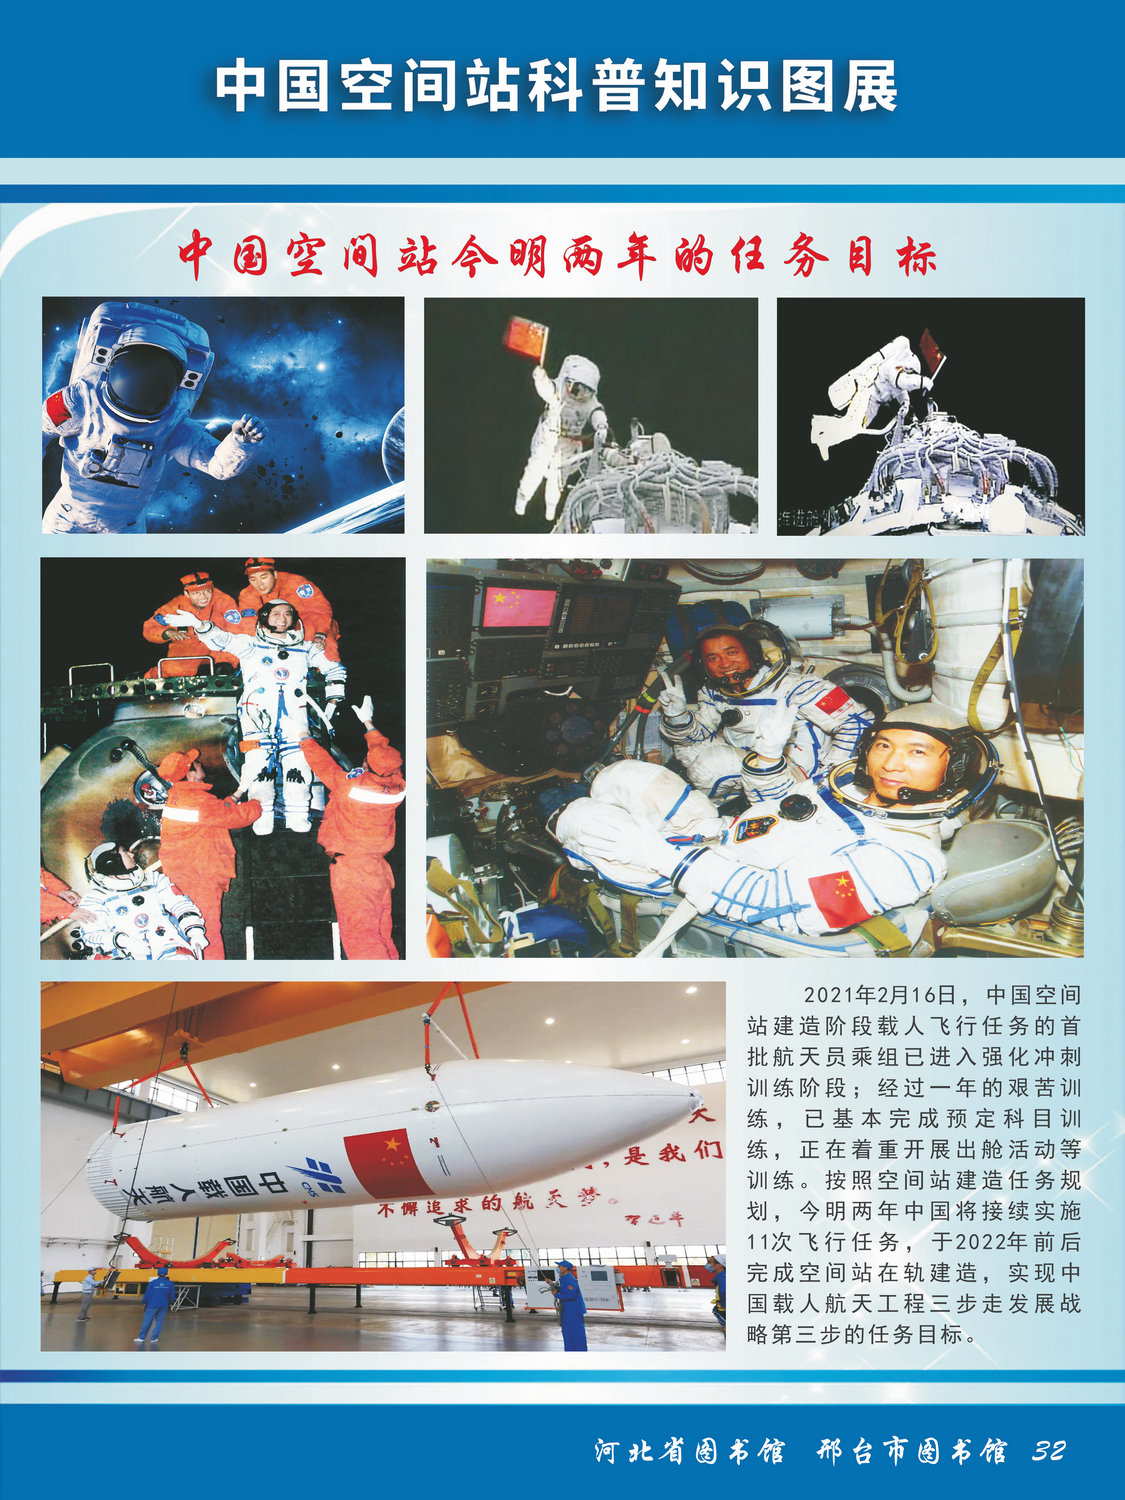 中国空间站科普知识图文展_图32